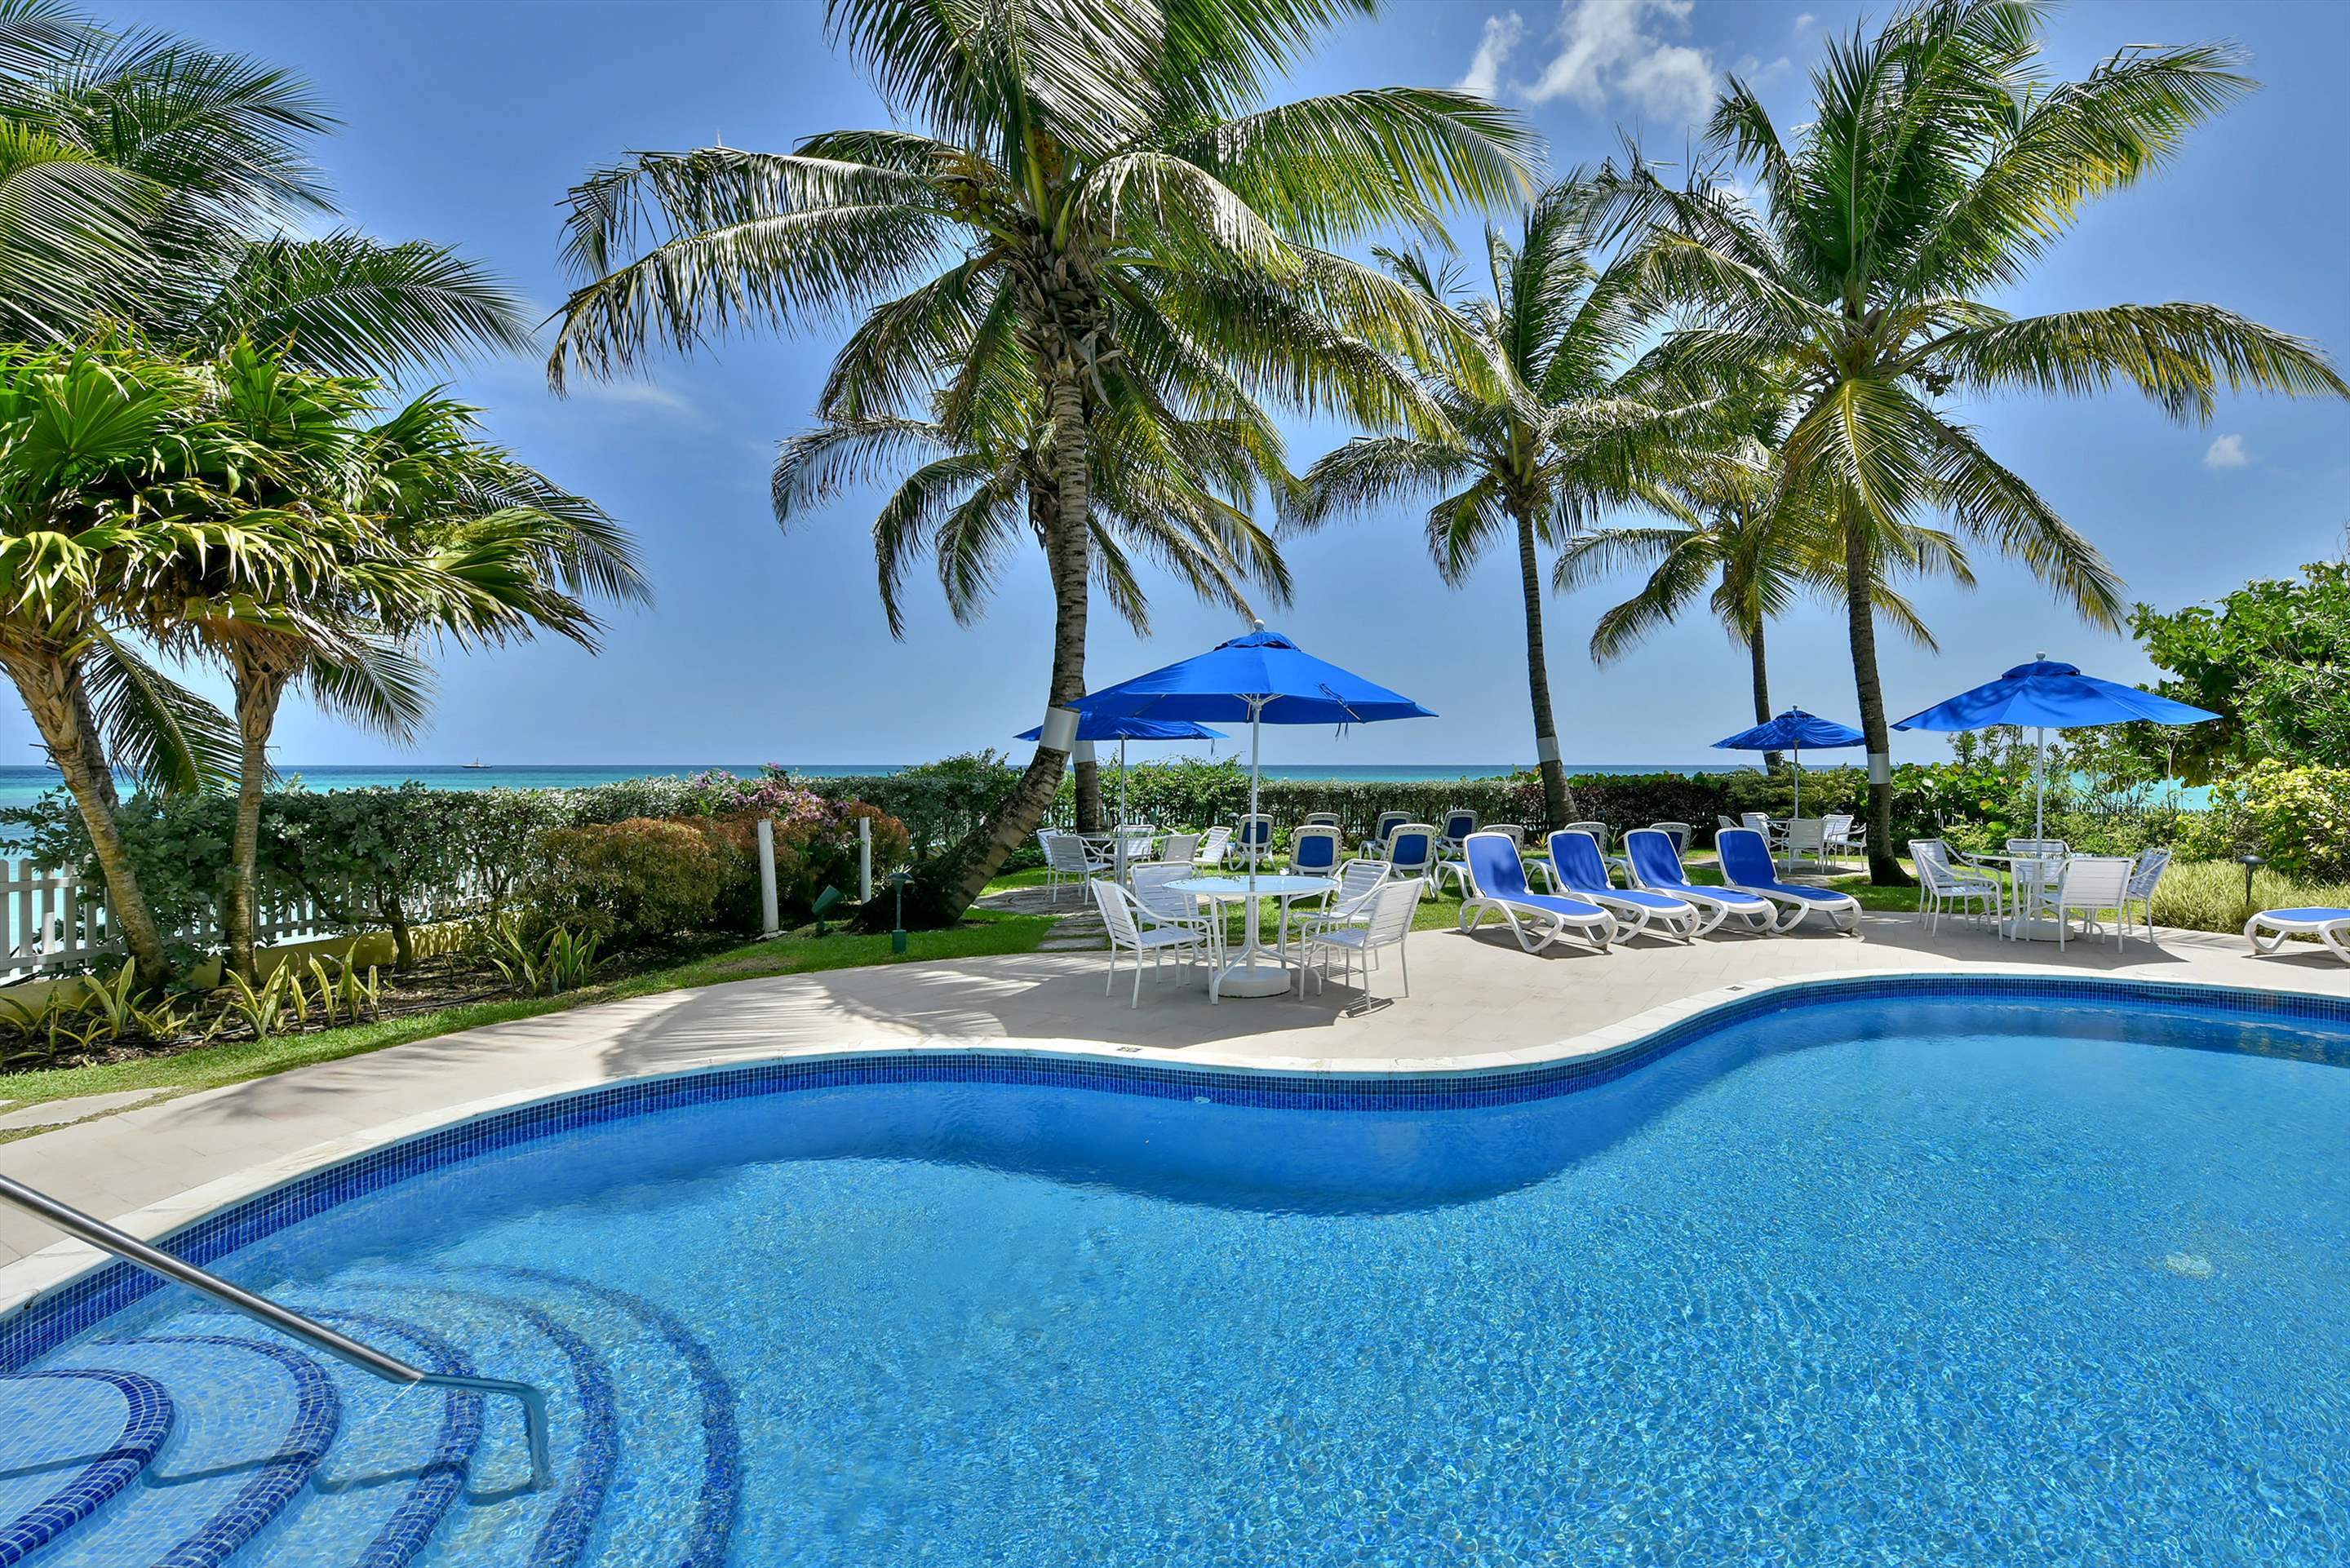 Maxwell Beach Villas 502, 2 bedroom, 2 bedroom villa in St. Lawrence Gap & South Coast, Barbados Photo #1